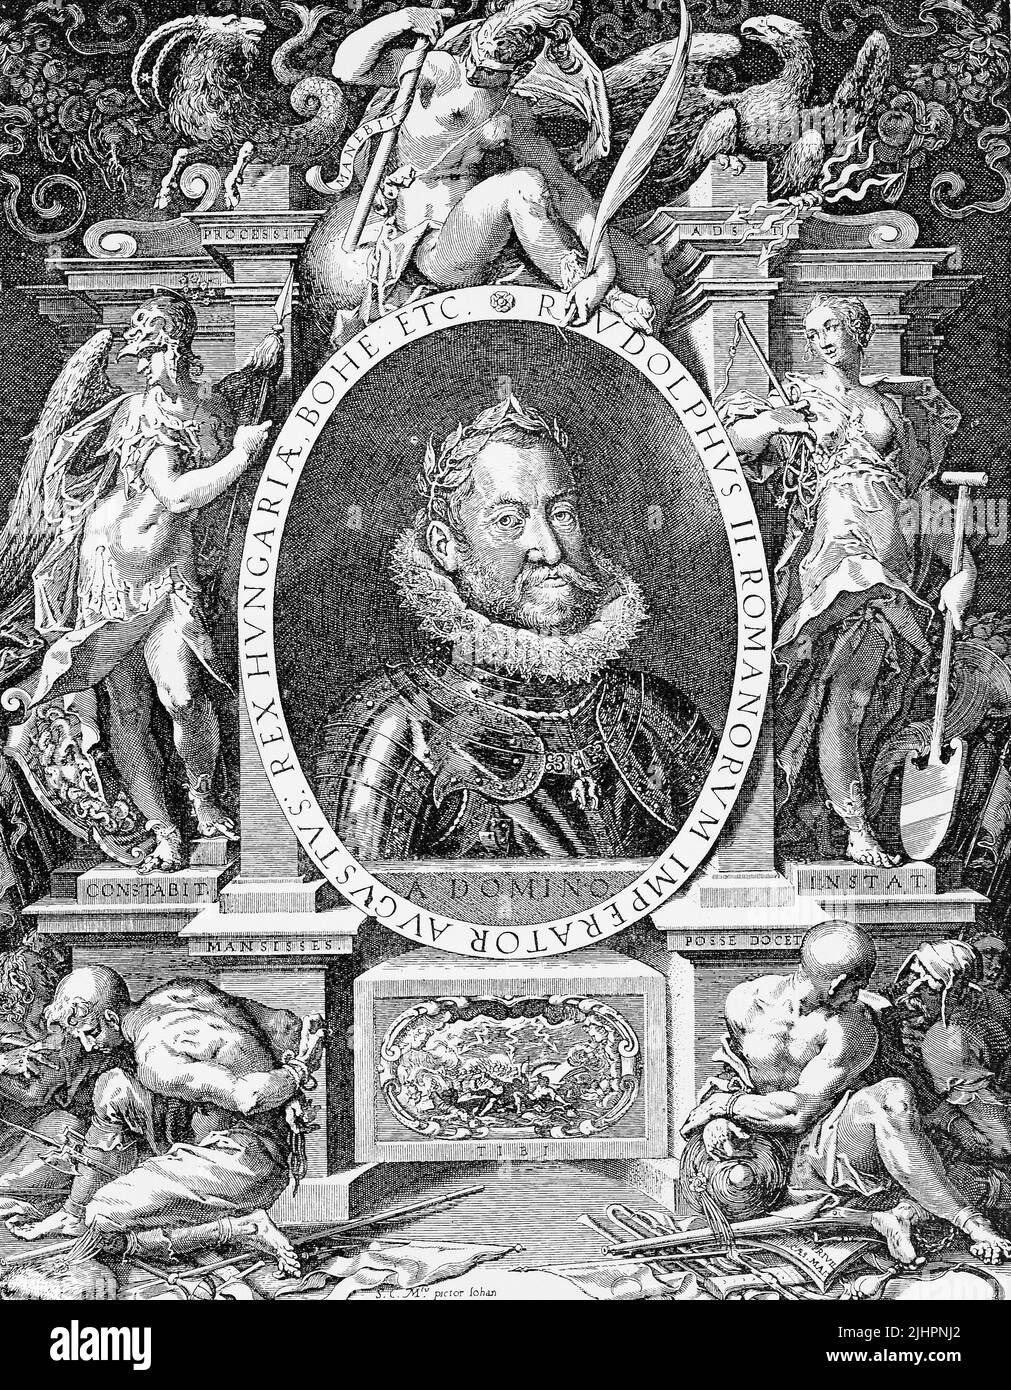 Rudolf II. (geboren 18. Juli 1552, gestorben 20. Januar 1612) war Kaiser des Heiligen Römischen Reichs (1576-1612), König von Böhmen (1576-1611) sowie König von Ungarn und Erzherzog von Österreich (1576-1608)  /  Maximilian II. (geboren am 31. Juli 1527, gestorben am 12. Oktober 1576), war Kaiser des Heiligen Römischen Reiches und Erzherzog von Österreich von 1564 bis 1576, Historisch, digital restaurierte Reproduktion einer Originalvorlage aus dem 19. Jahrhundert, genaues Originaldatum nicht bekannt, Stock Photo